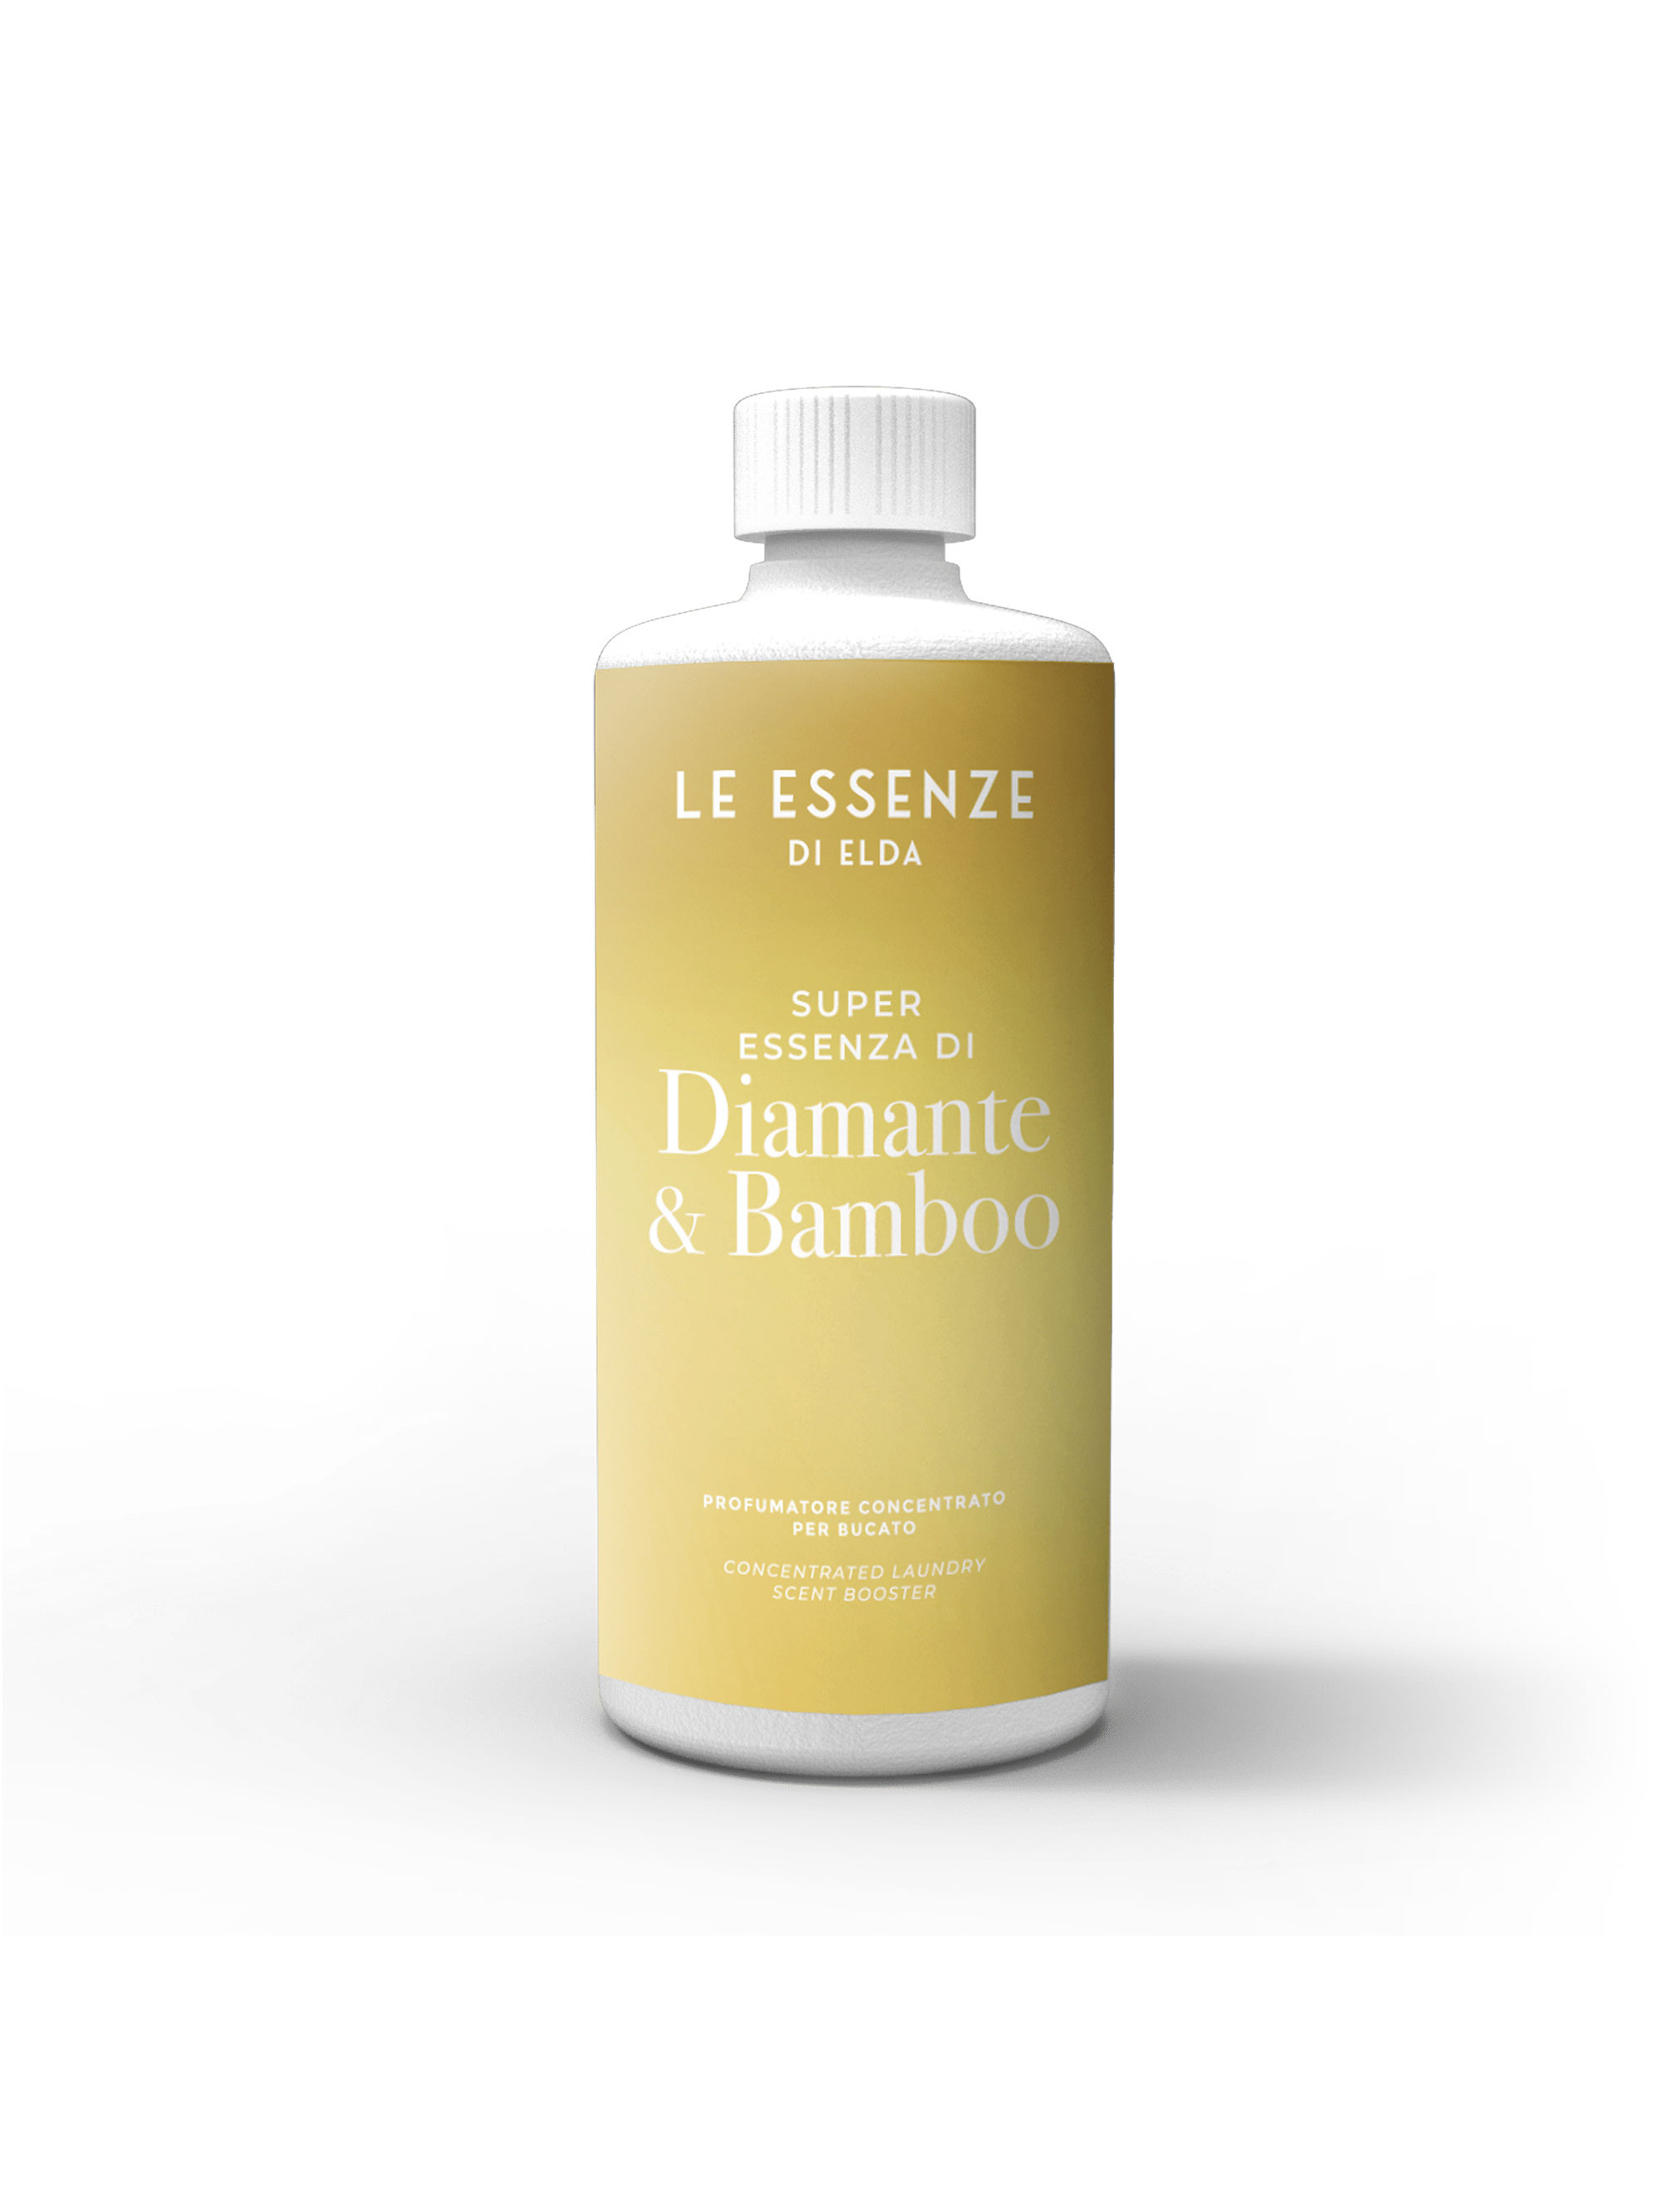 Essenza di Diamante & Bamboo - 500 ml laundry perfumer